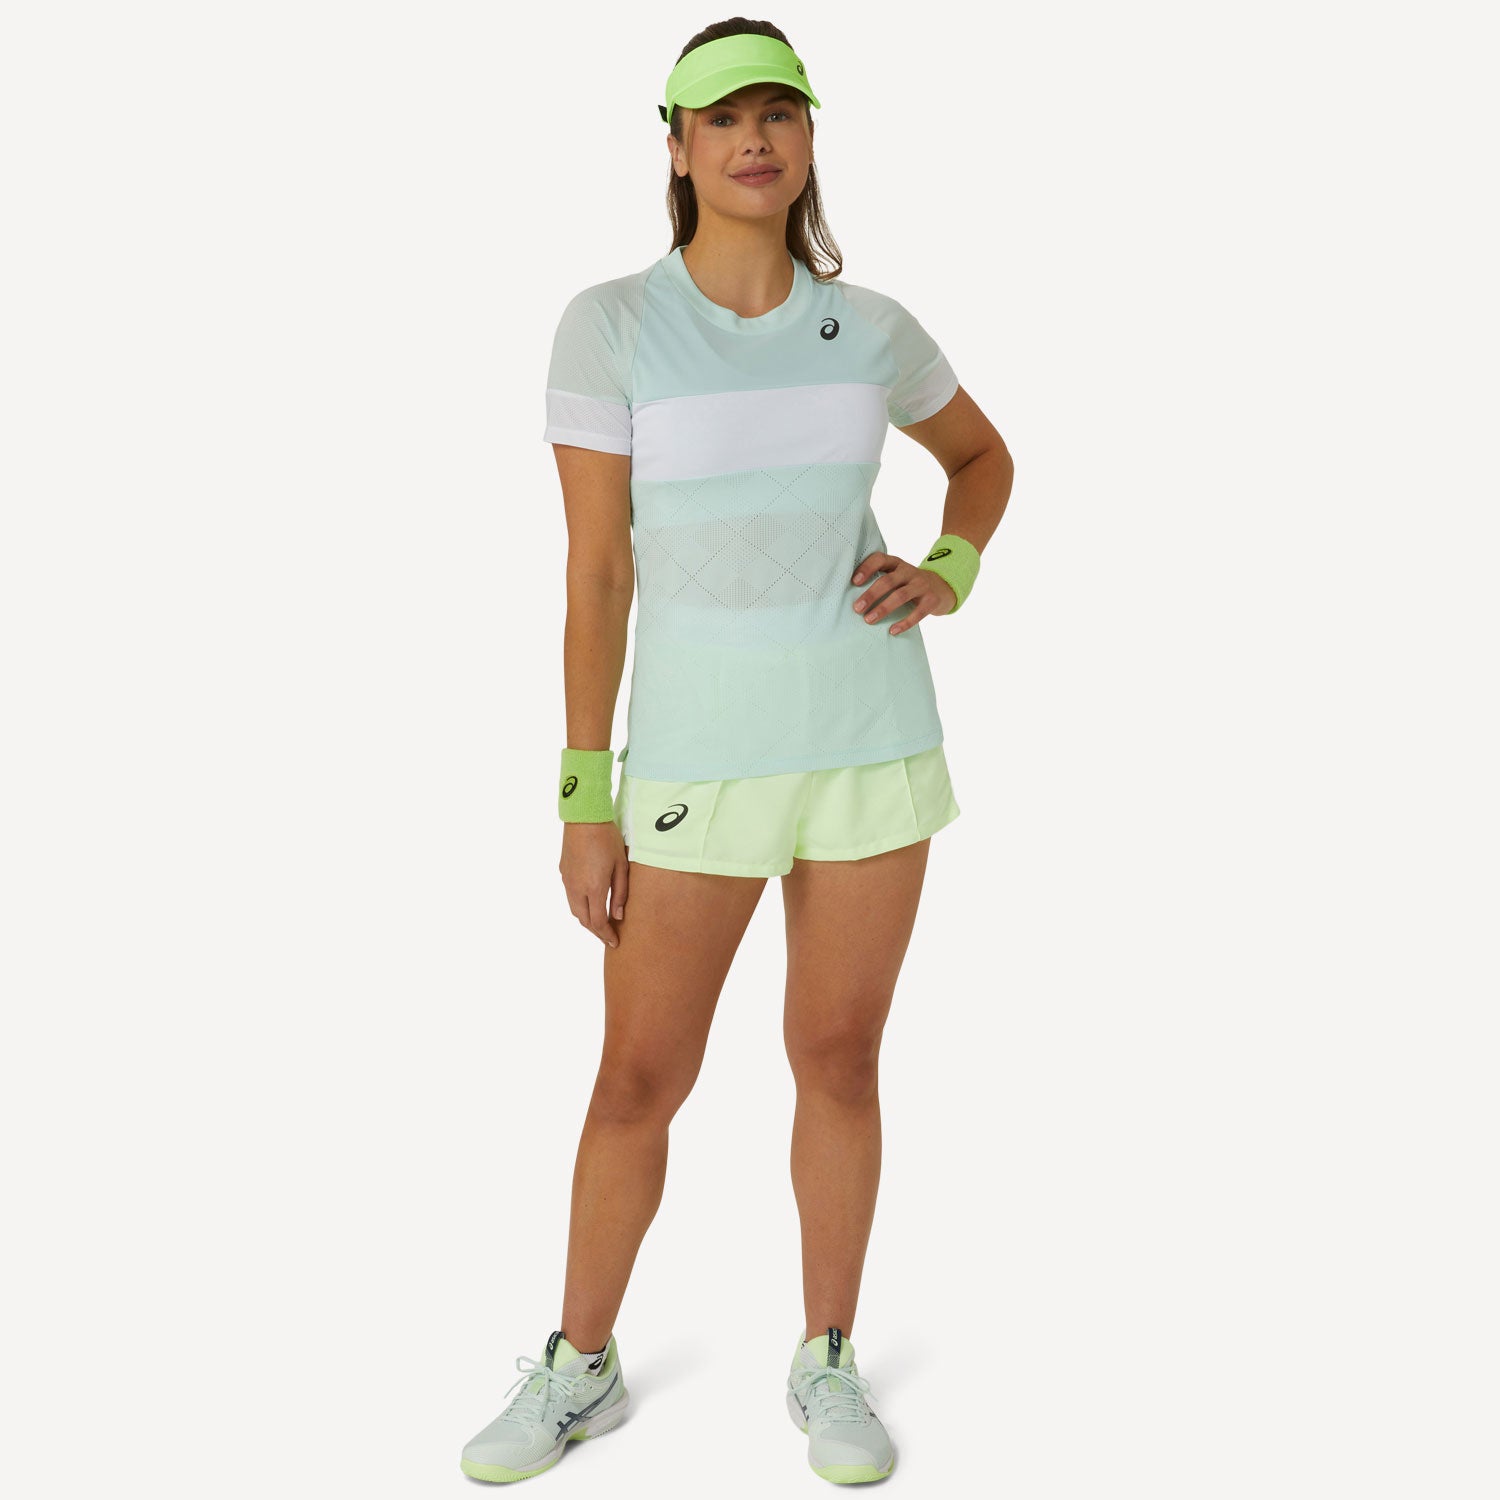 ASICS Game Women's Tennis Shirt - Green (6)